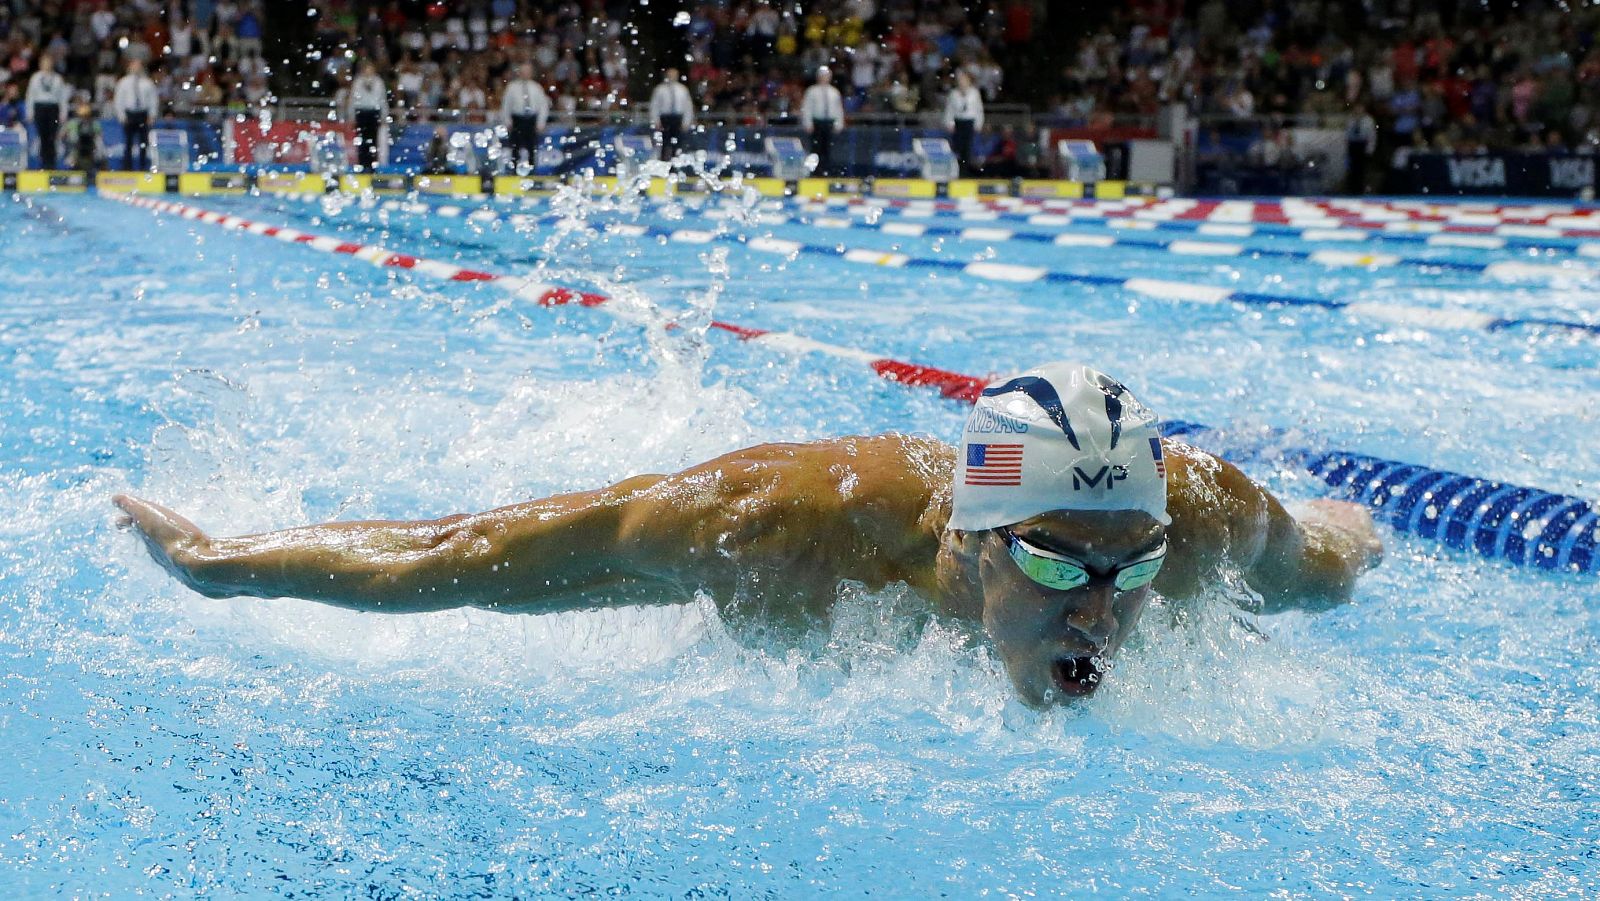 Michael Phelps entra en el prestigioso club de los veterano olímpicos con cinco participaciones. Jesús Ángel García Bragado, por su parte, será el deportista español con más participaciones en eventos olímpicos.